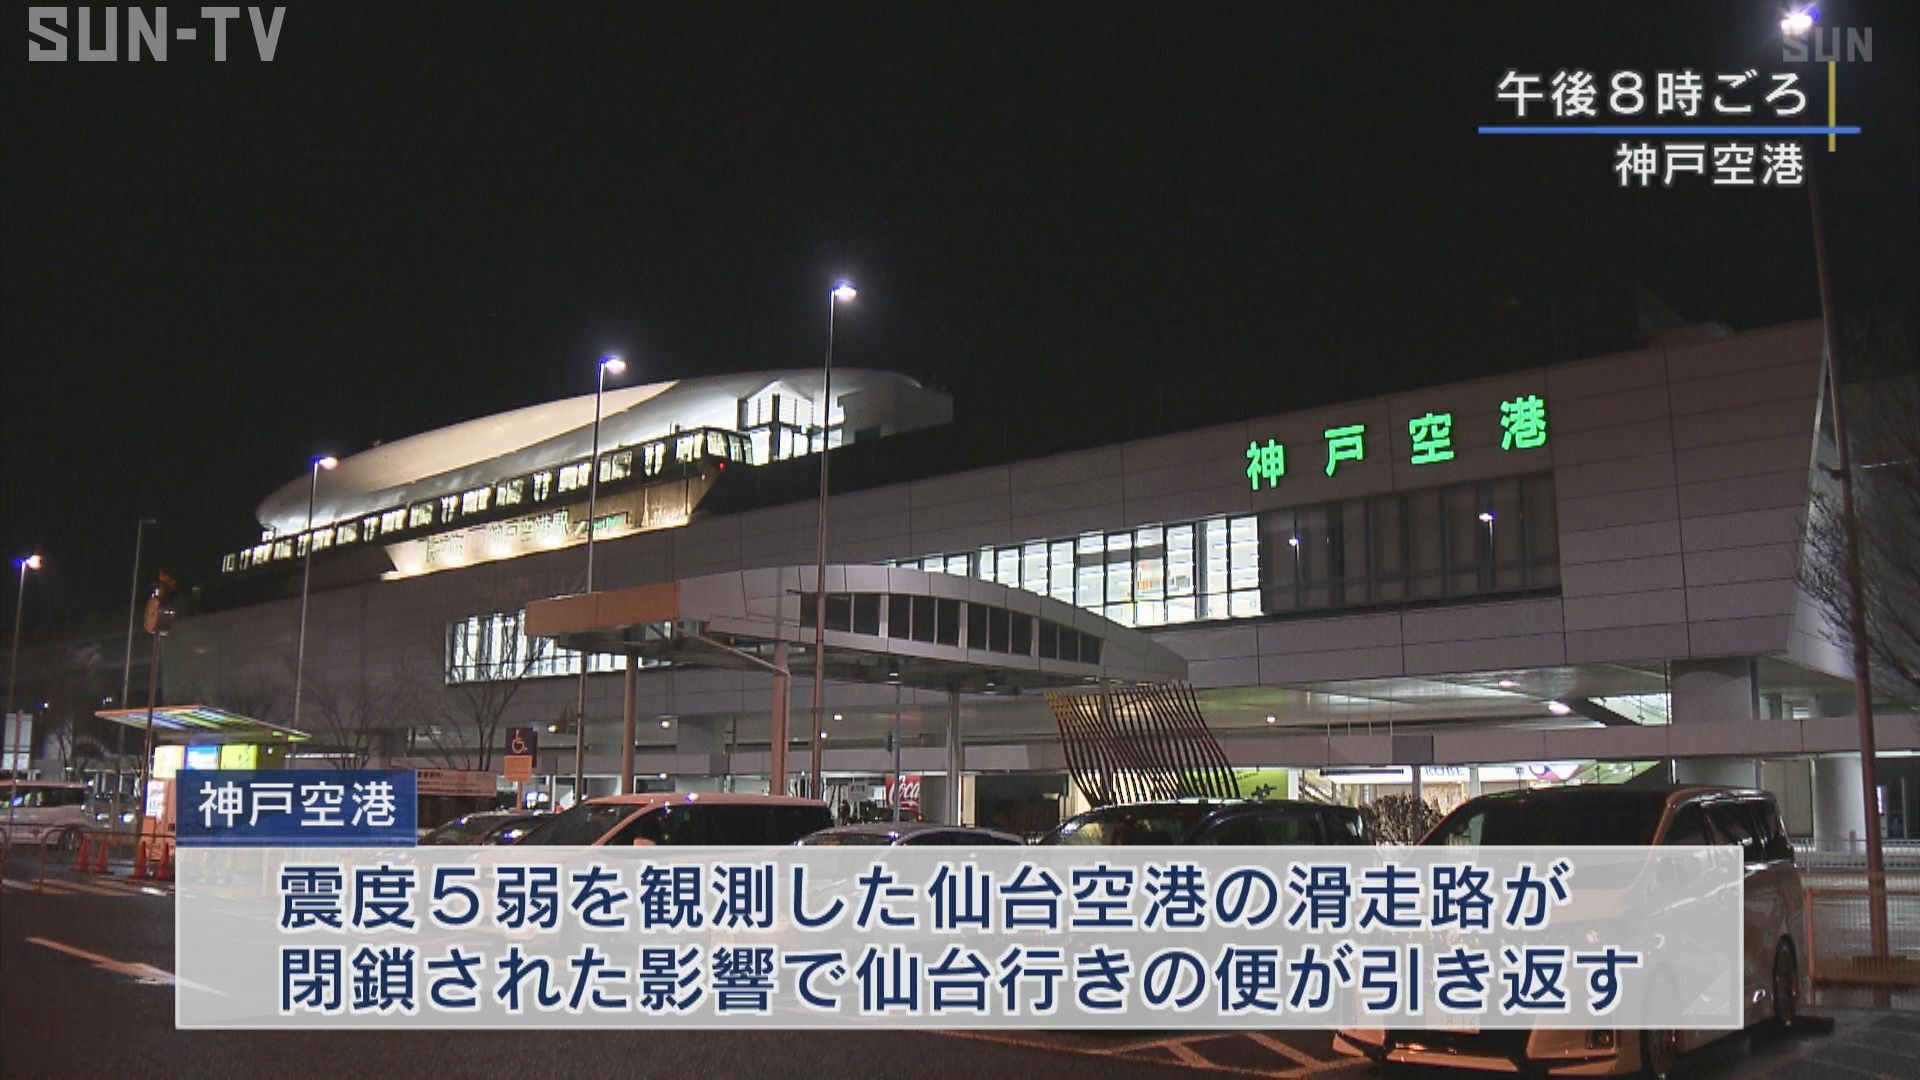 宮城県で震度5強の地震 飛行機が神戸空港に引き返す サンテレビニュース